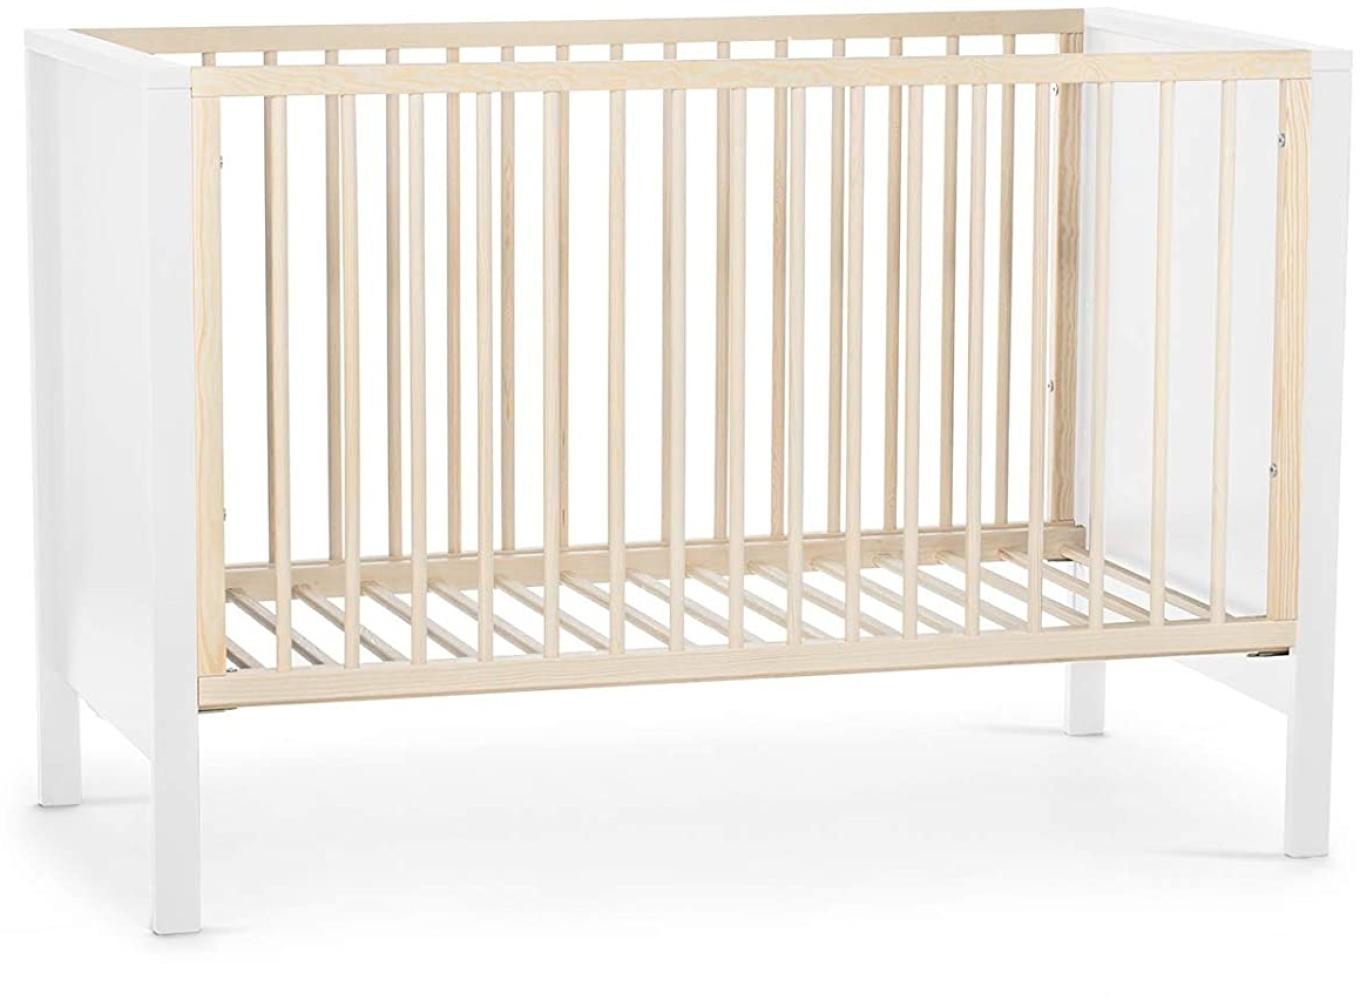 Kinderkraft 'Mia' Babybett 120 x 60 cm, Weiß, 3-fach höhenverstellbar Bild 1